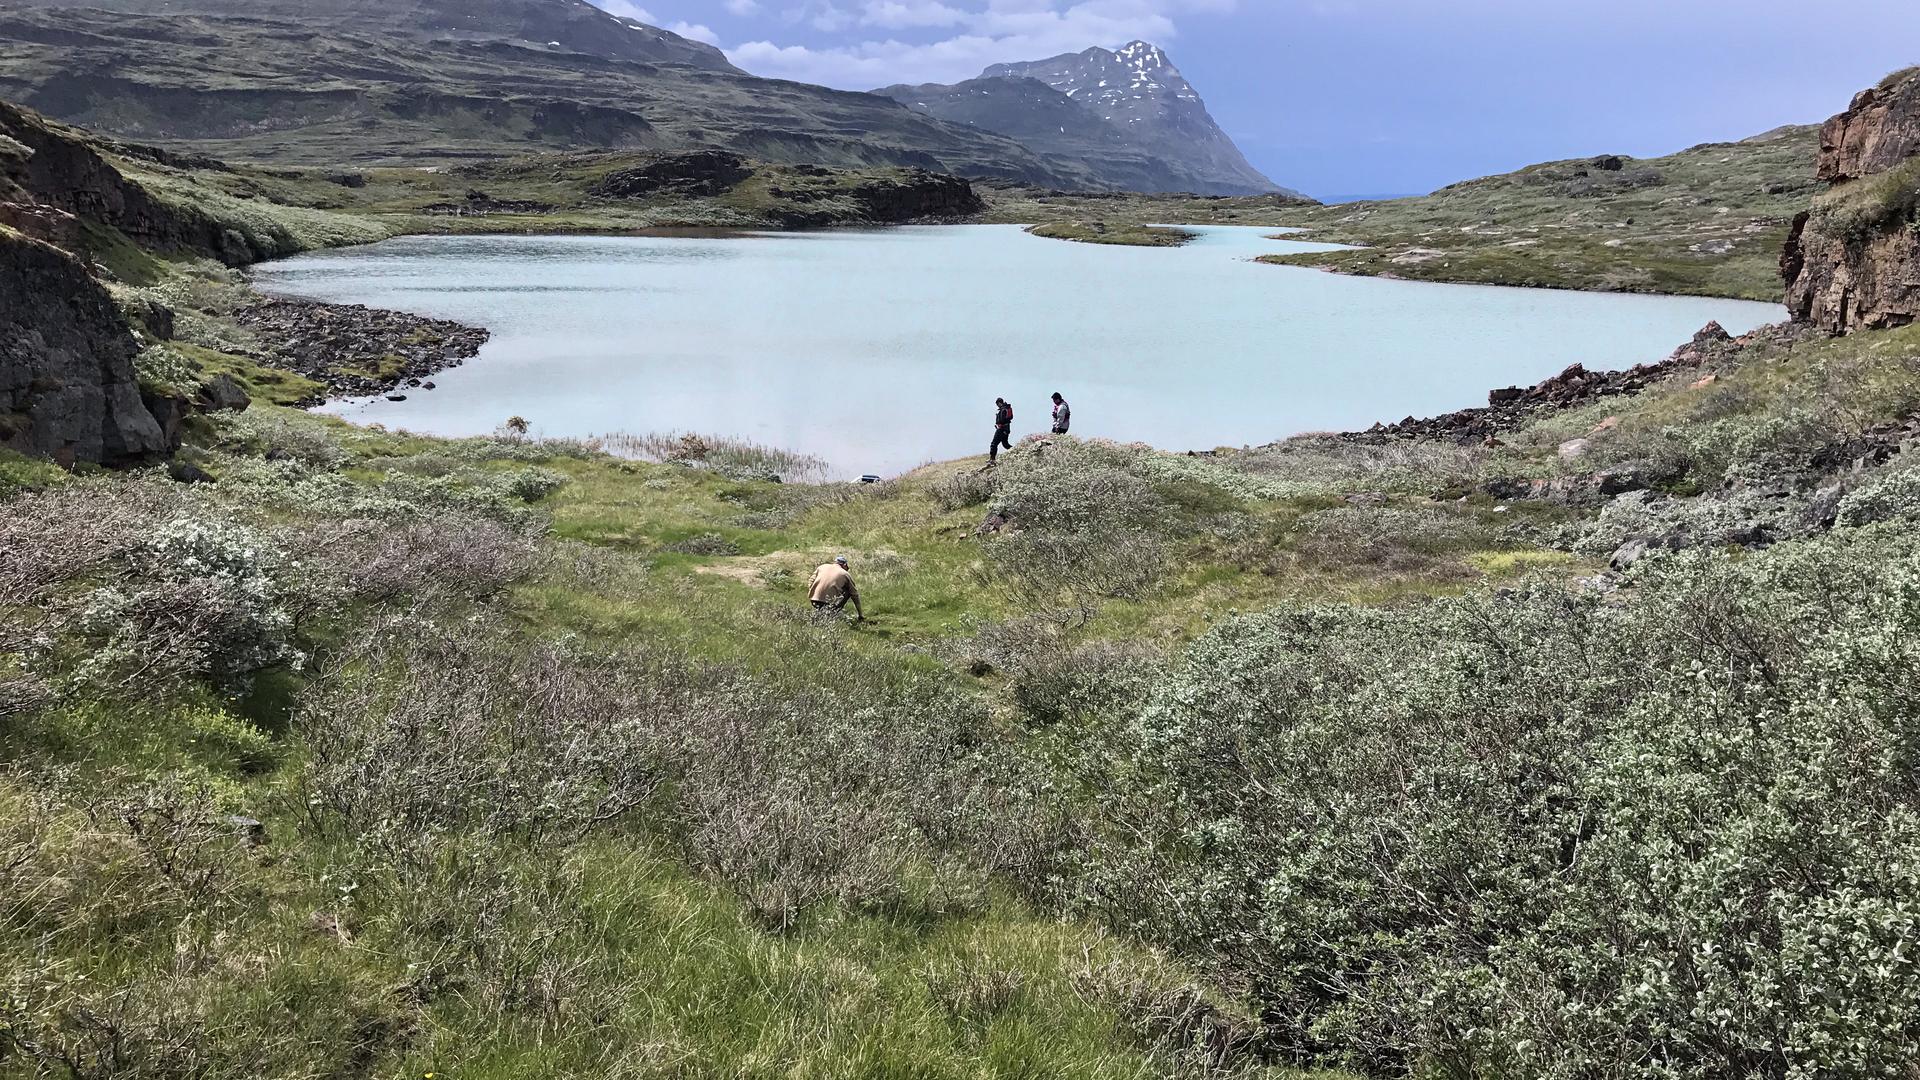 Groenland - Le lac 578 dans le sud du pays au bord duquel se trouvent les ruines d'une ancienne ferme de colons nordiques - Photo: Raymond S. Bradley